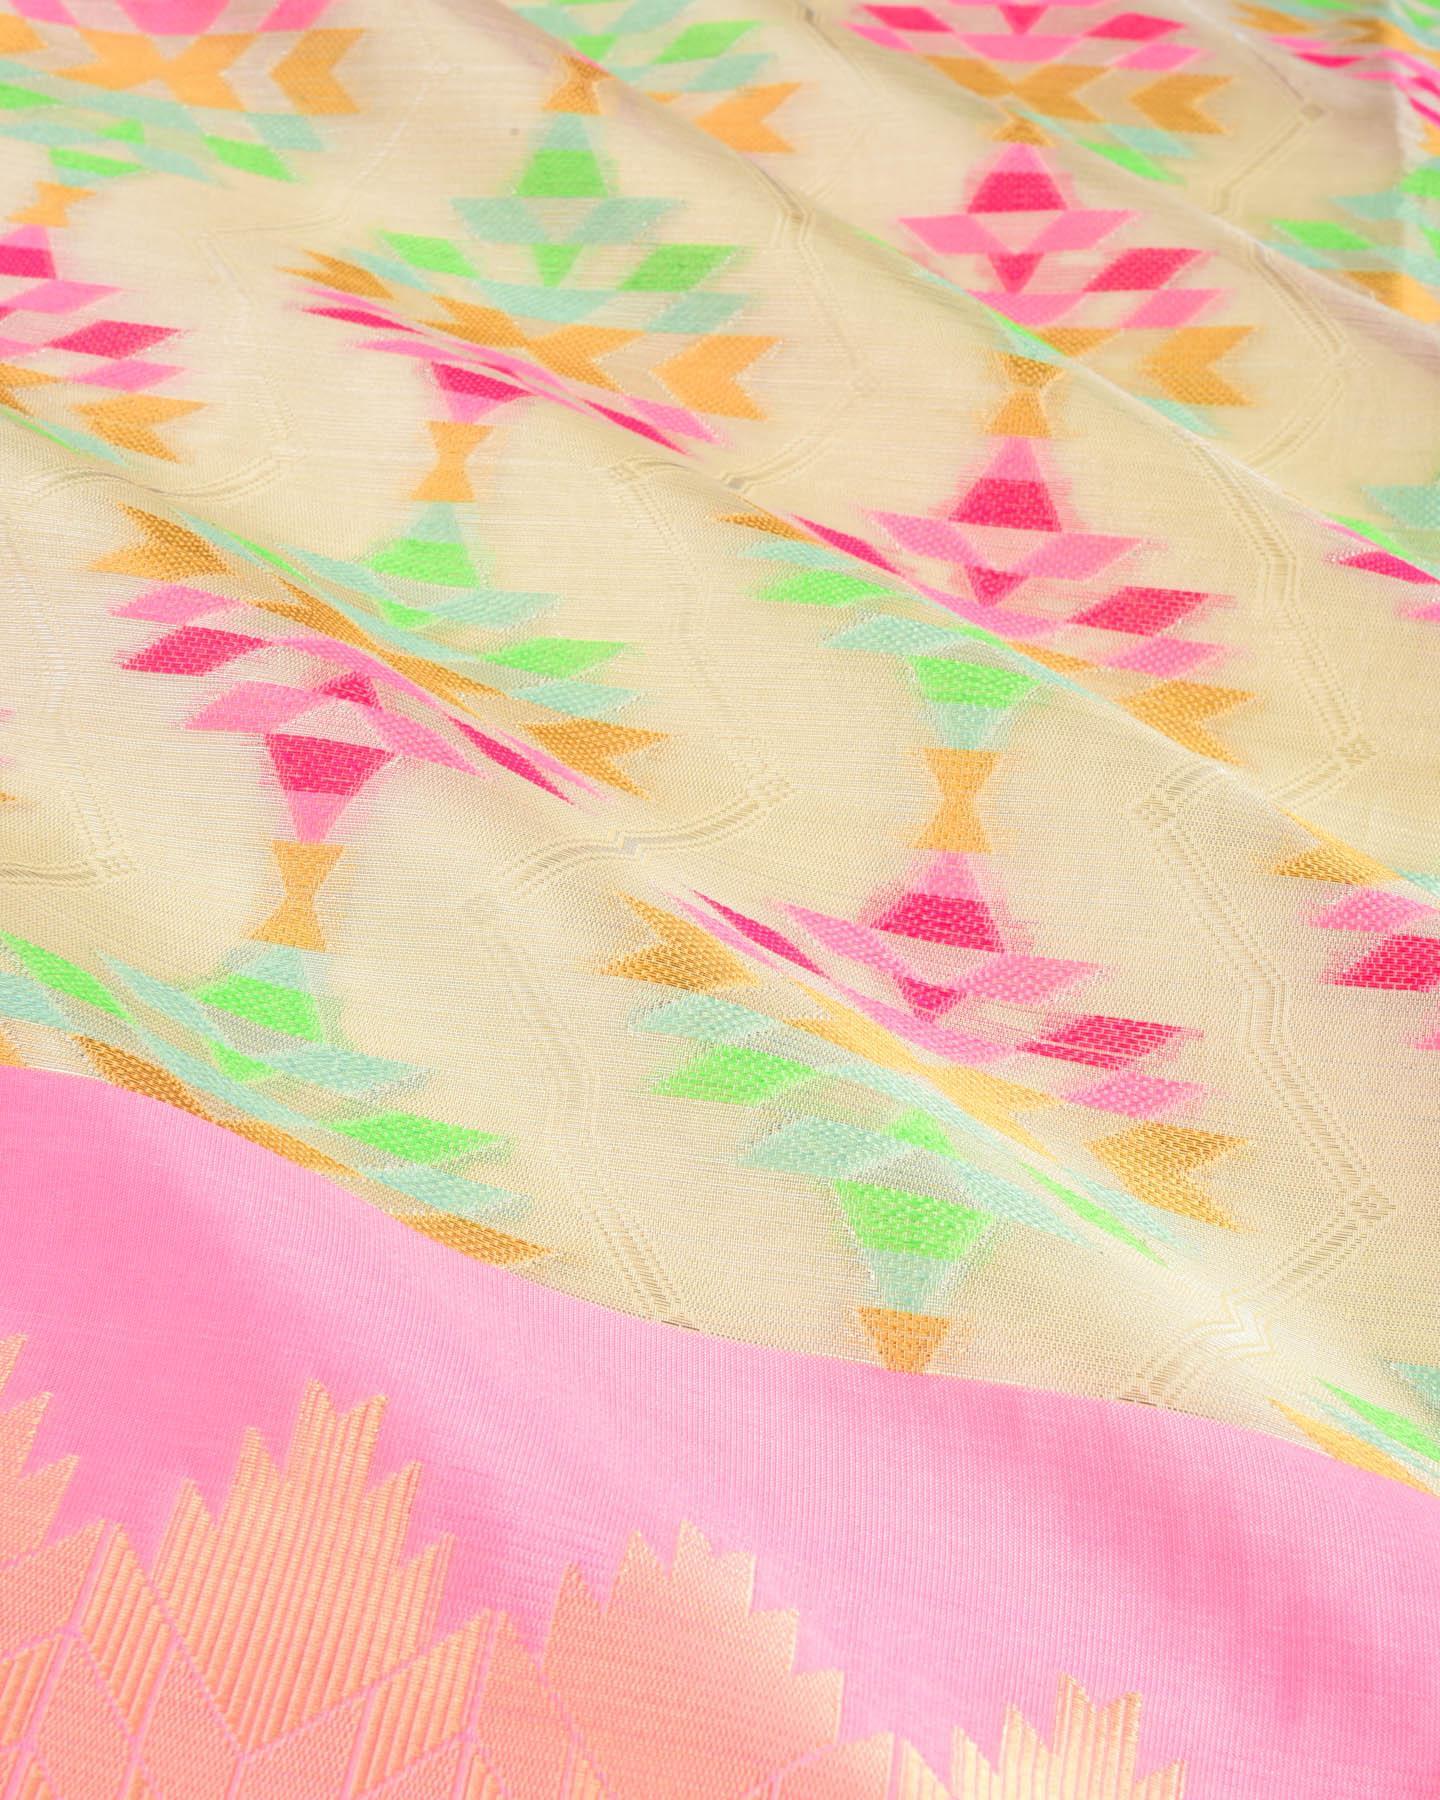 Silver Banarasi Kaleidoscopic Cutwork Brocade Woven Cotton Tissue Saree - By HolyWeaves, Benares